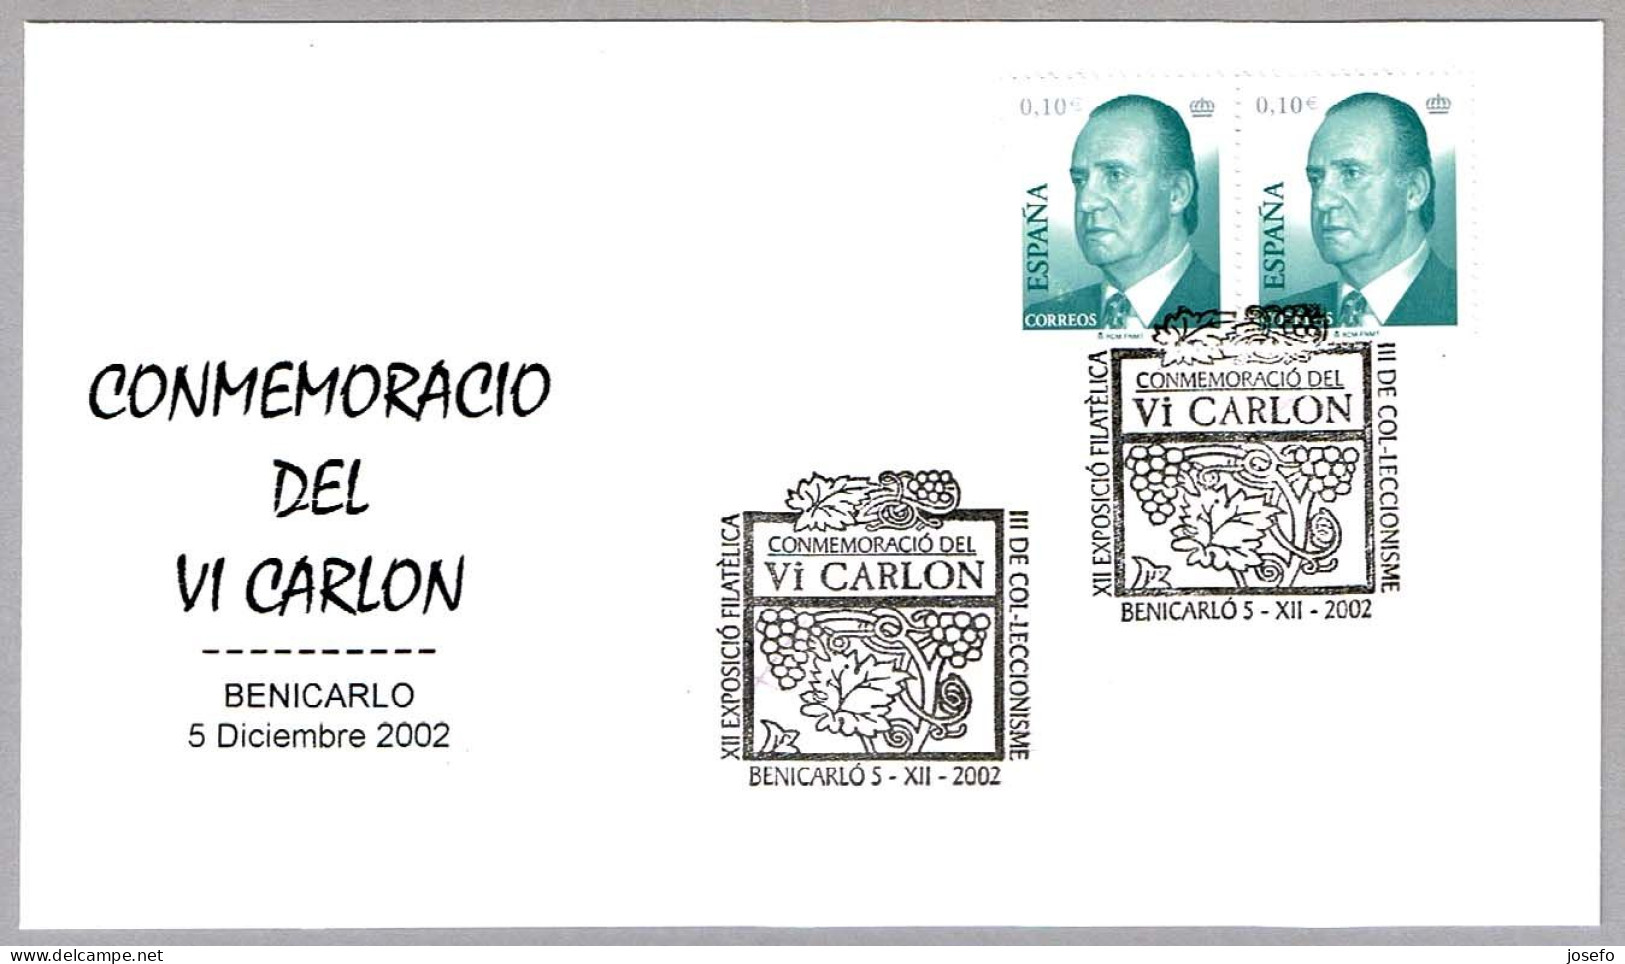 Conmemoration Del VINO VI CARLON - Wine VI CARLON. Benicarlo, Castellon, 2002 - Vins & Alcools